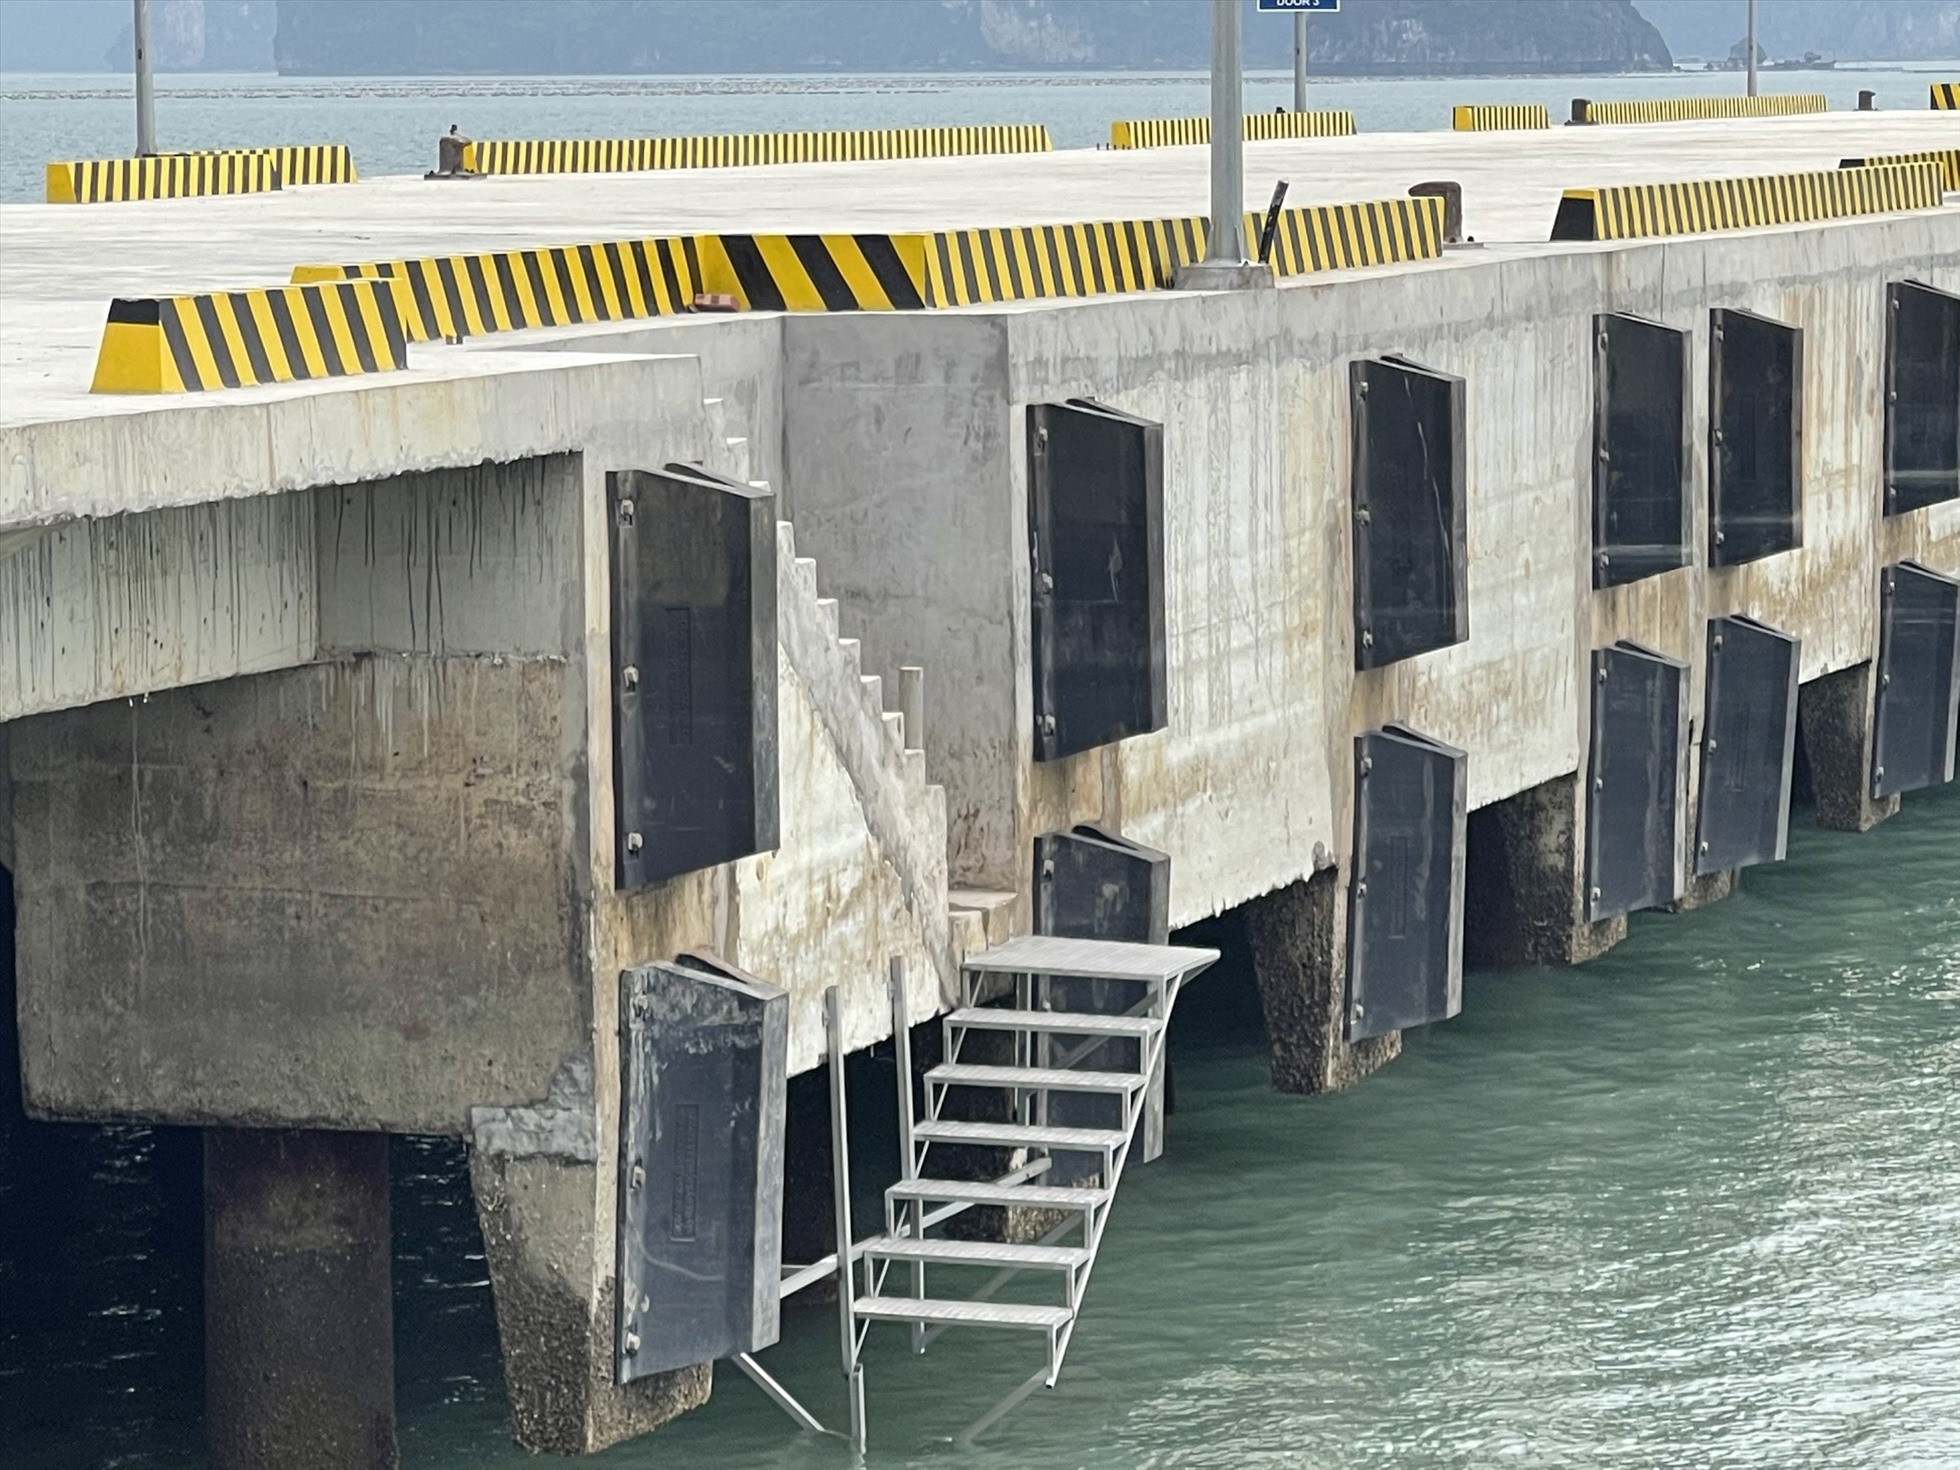 Thiết kế của Cảng cao cấp Ao Tiên như thế này không đảm bảo an toàn, thuận tiện cho du khách, người dân, nhất là những người cao tuổi, trẻ em lên - xuống tàu. Ảnh: Nguyễn Quý